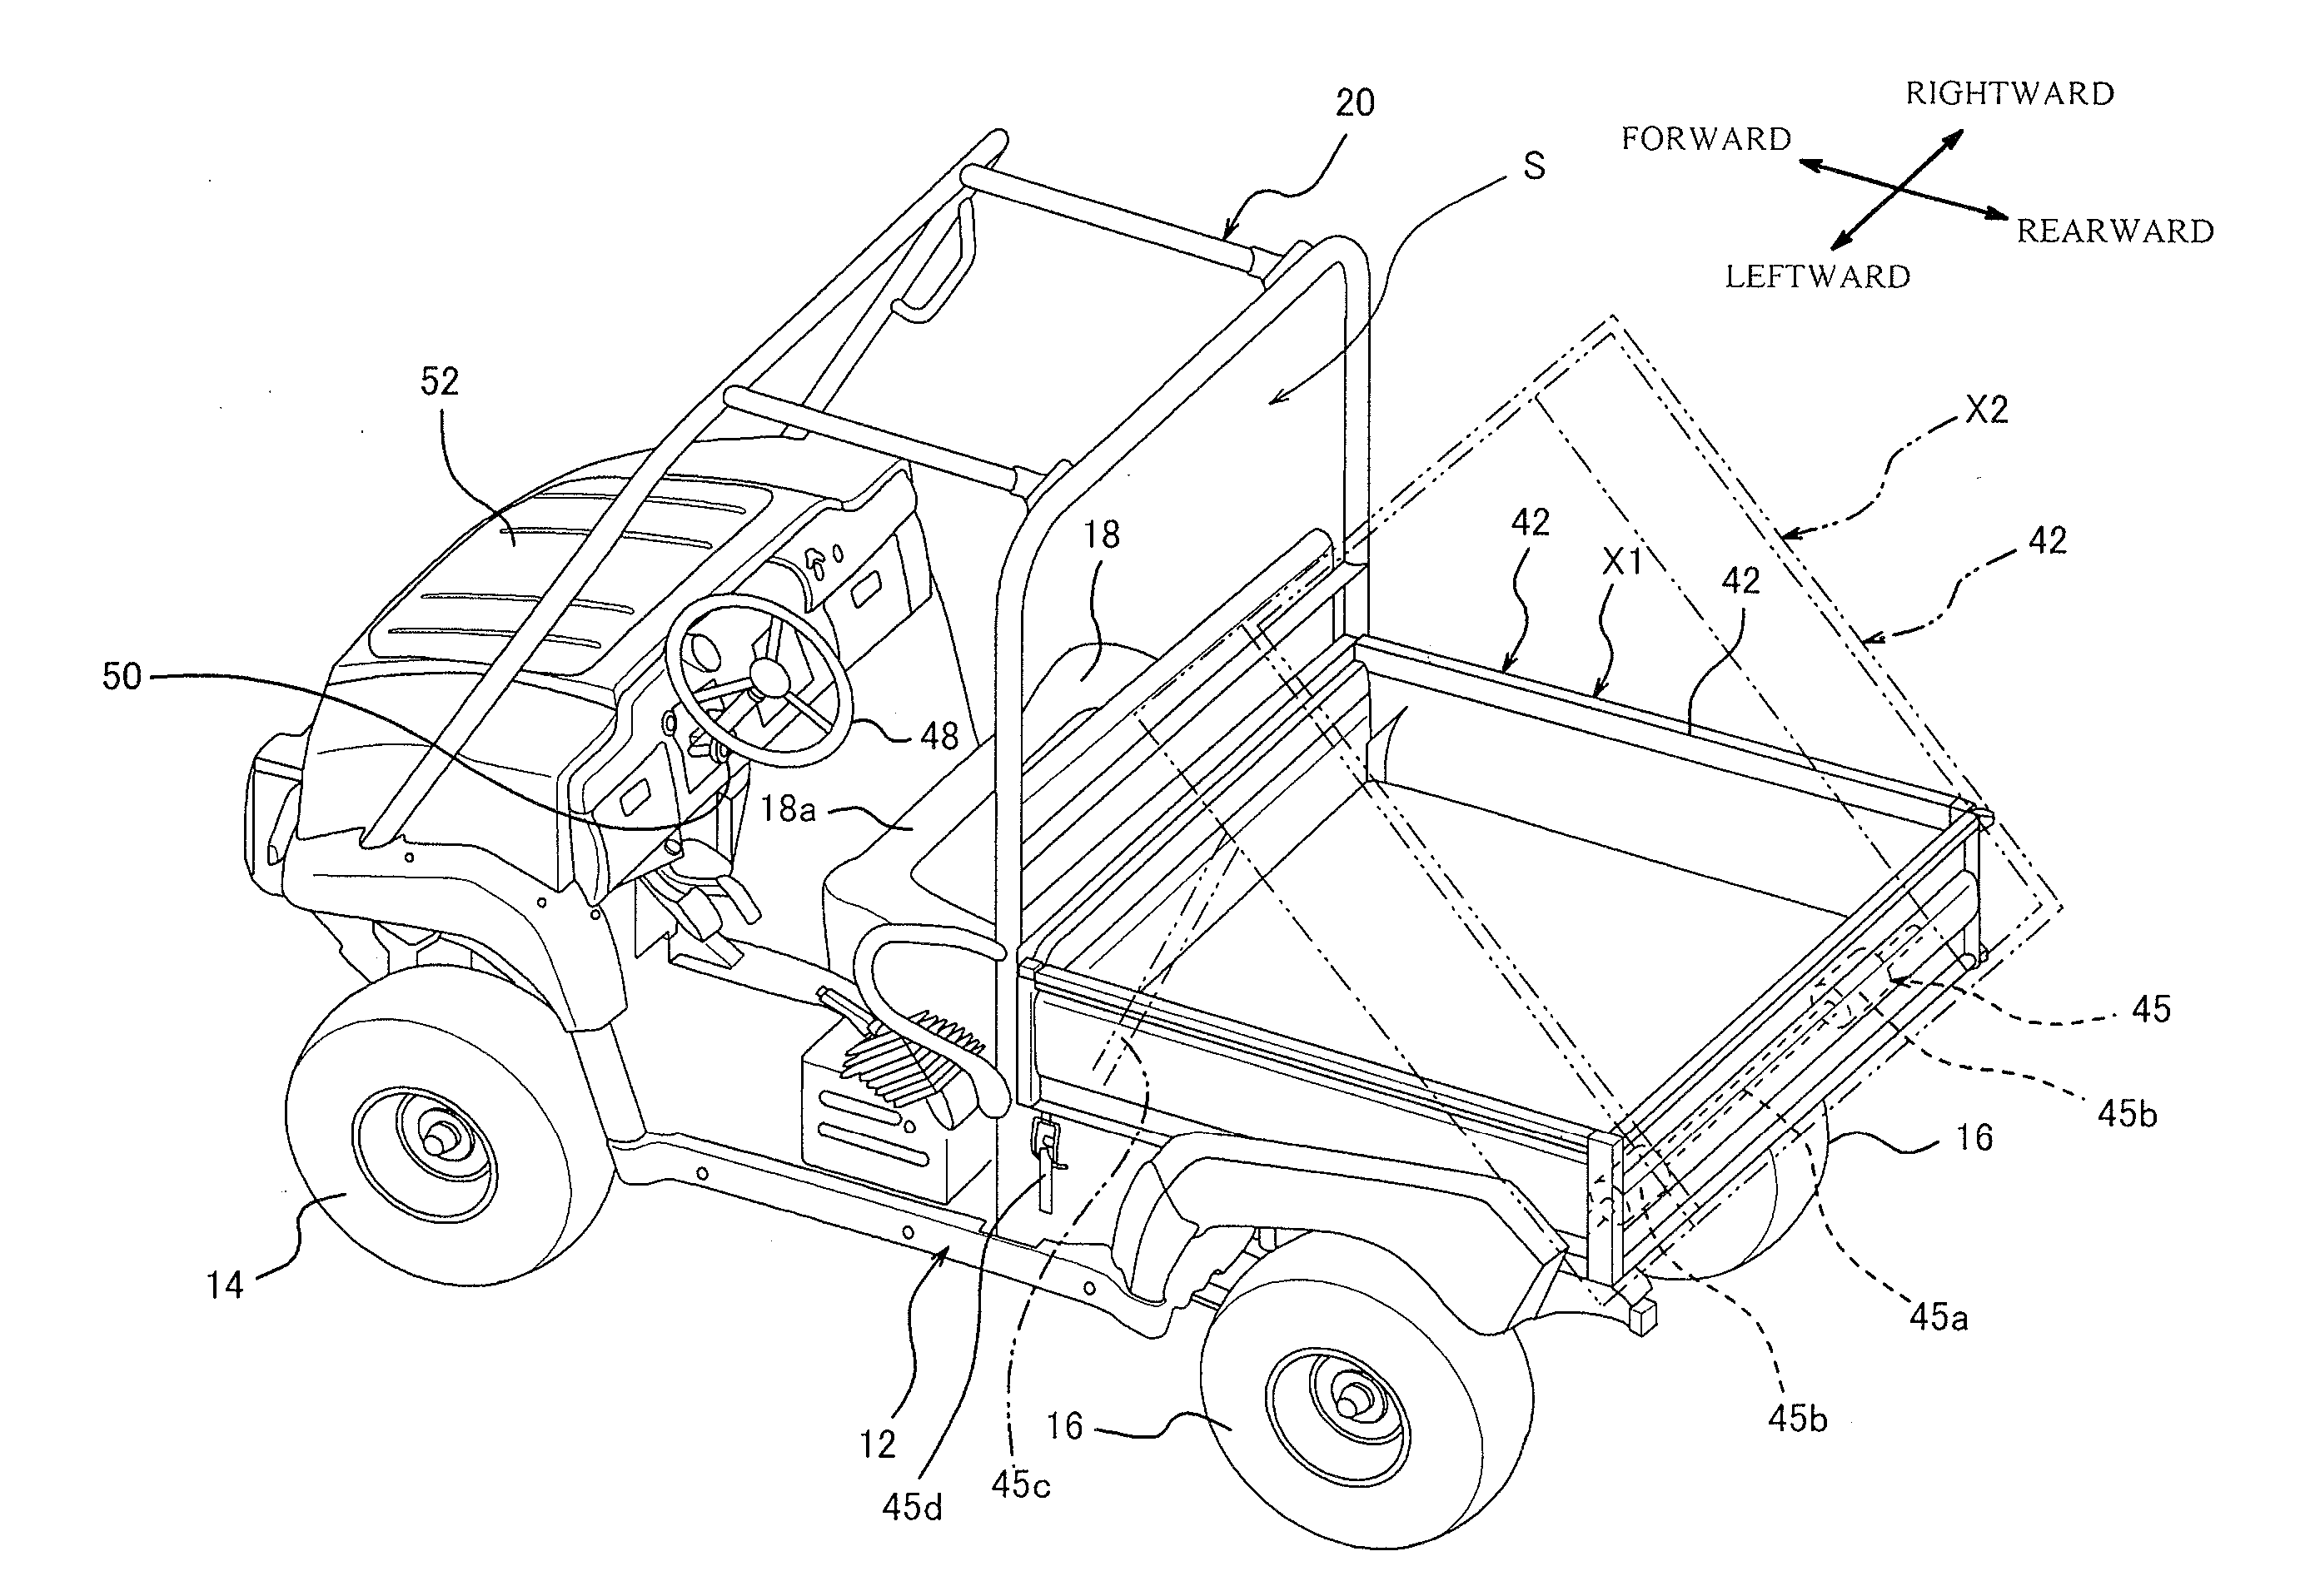 Series-Hybrid Vehicle